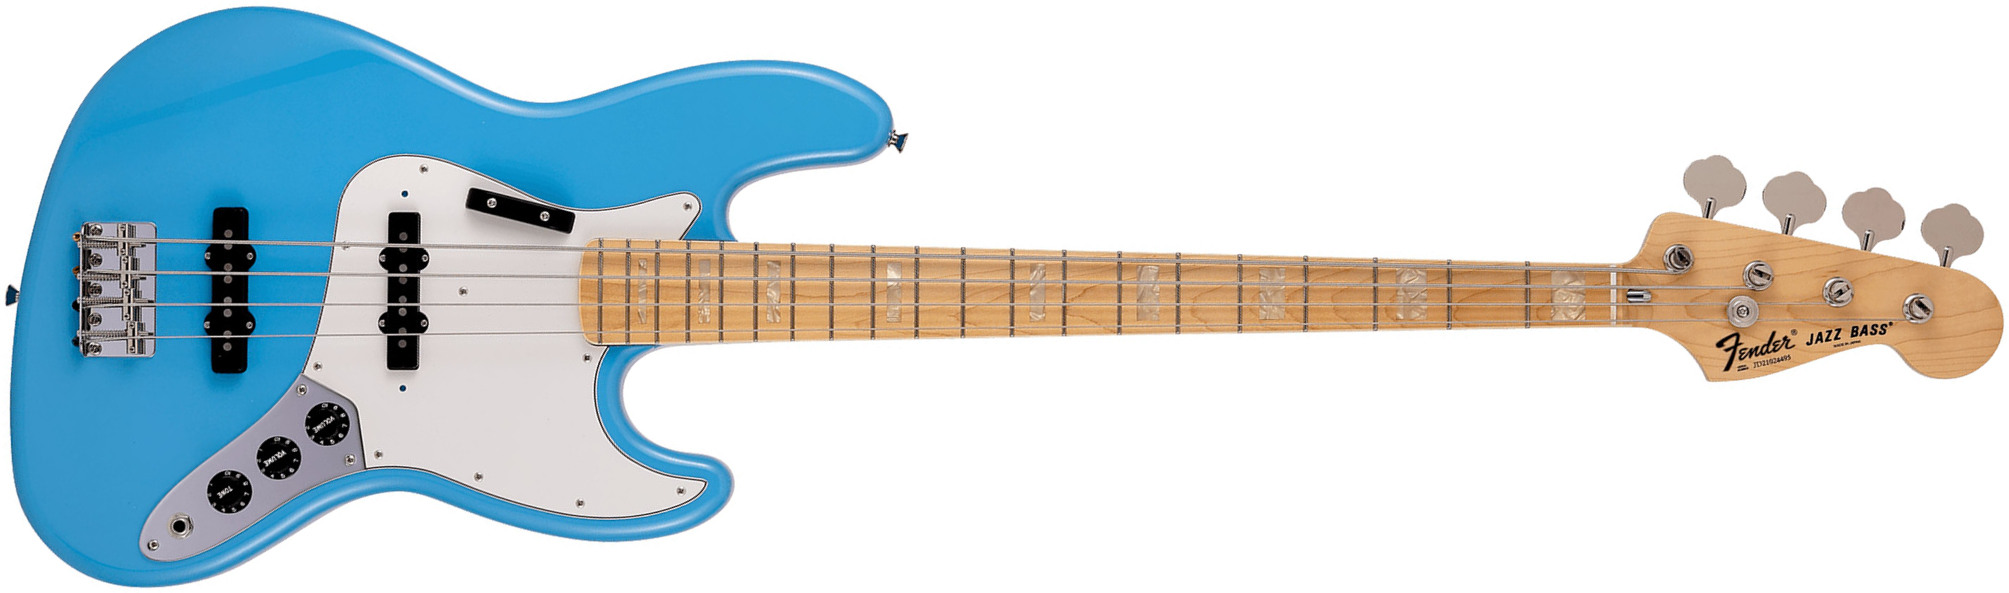 Fender Jazz Bass International Color Ltd Jap Mn - Maui Blue - Basse Électrique Solid Body - Main picture